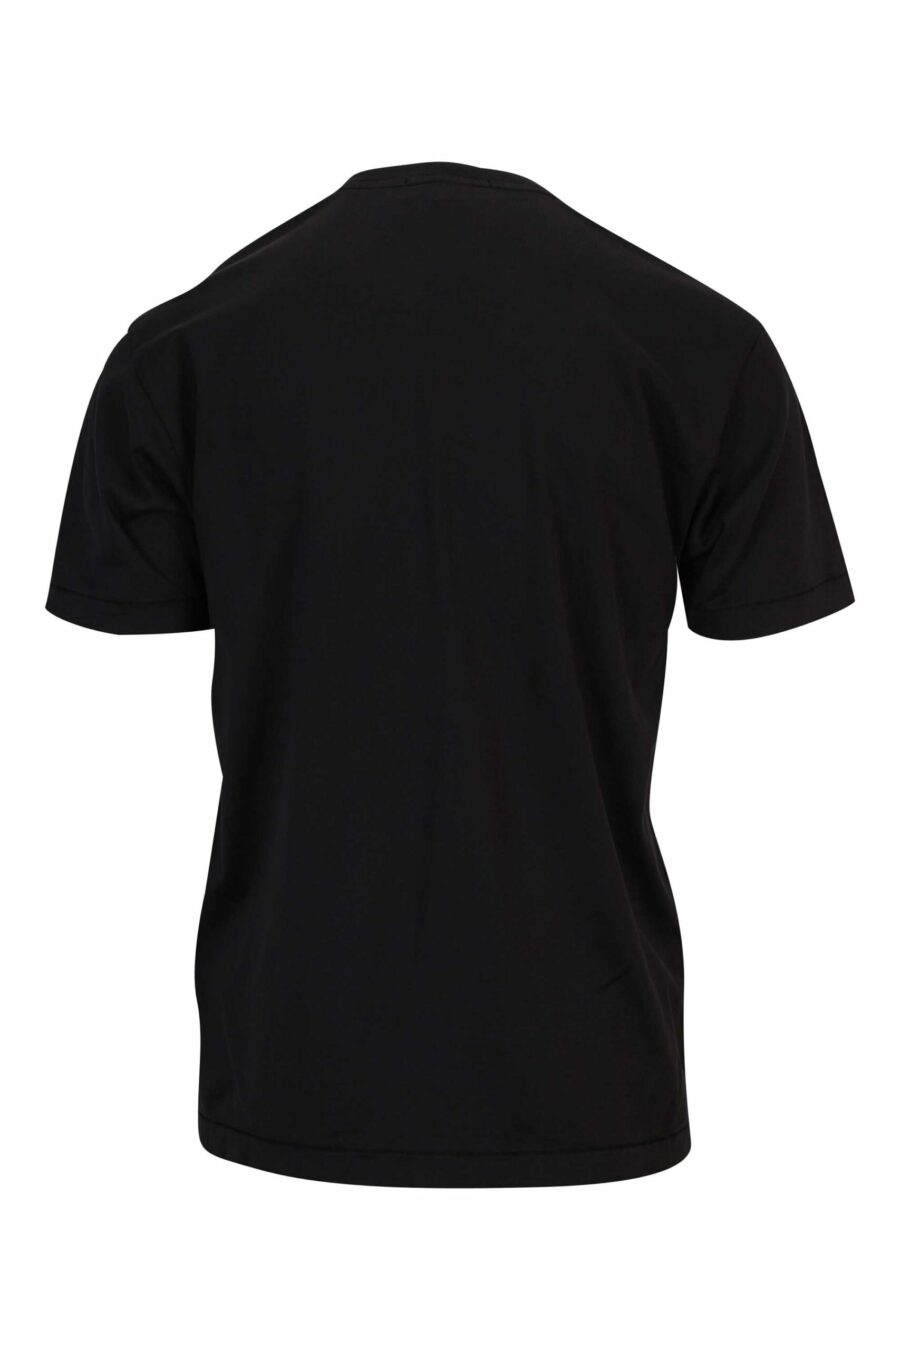 Camiseta negra con minilogo parche brújula - 8052572851964 1 scaled